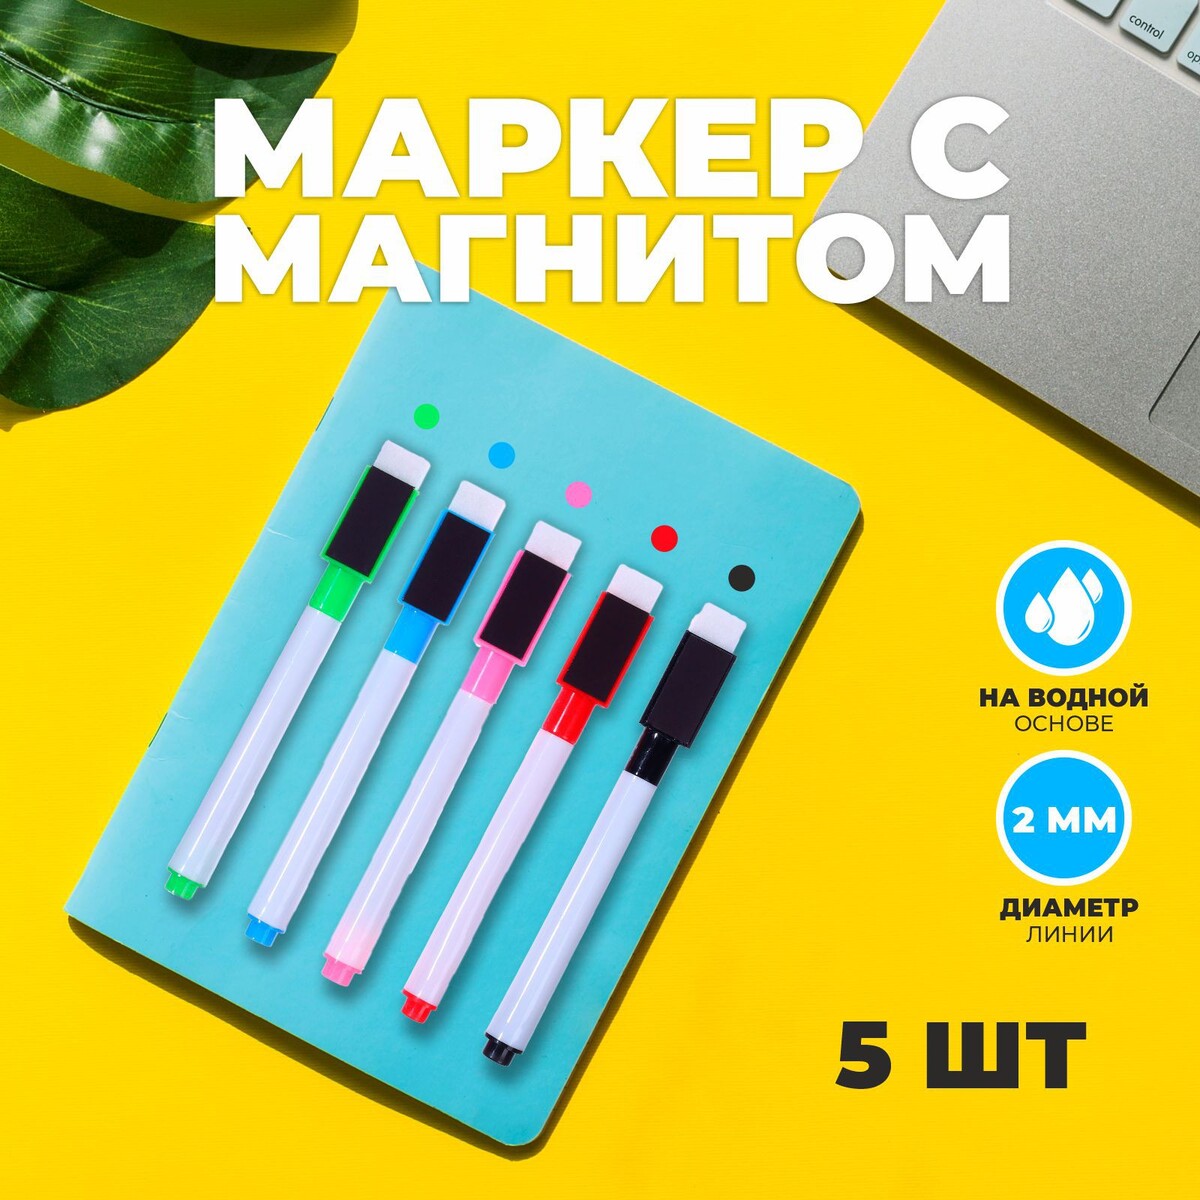 Маркер с магнитом цветной, на водной основе, набор 5 шт. маркер двухсторонний лев br64 спиртовая основа sketchmarker